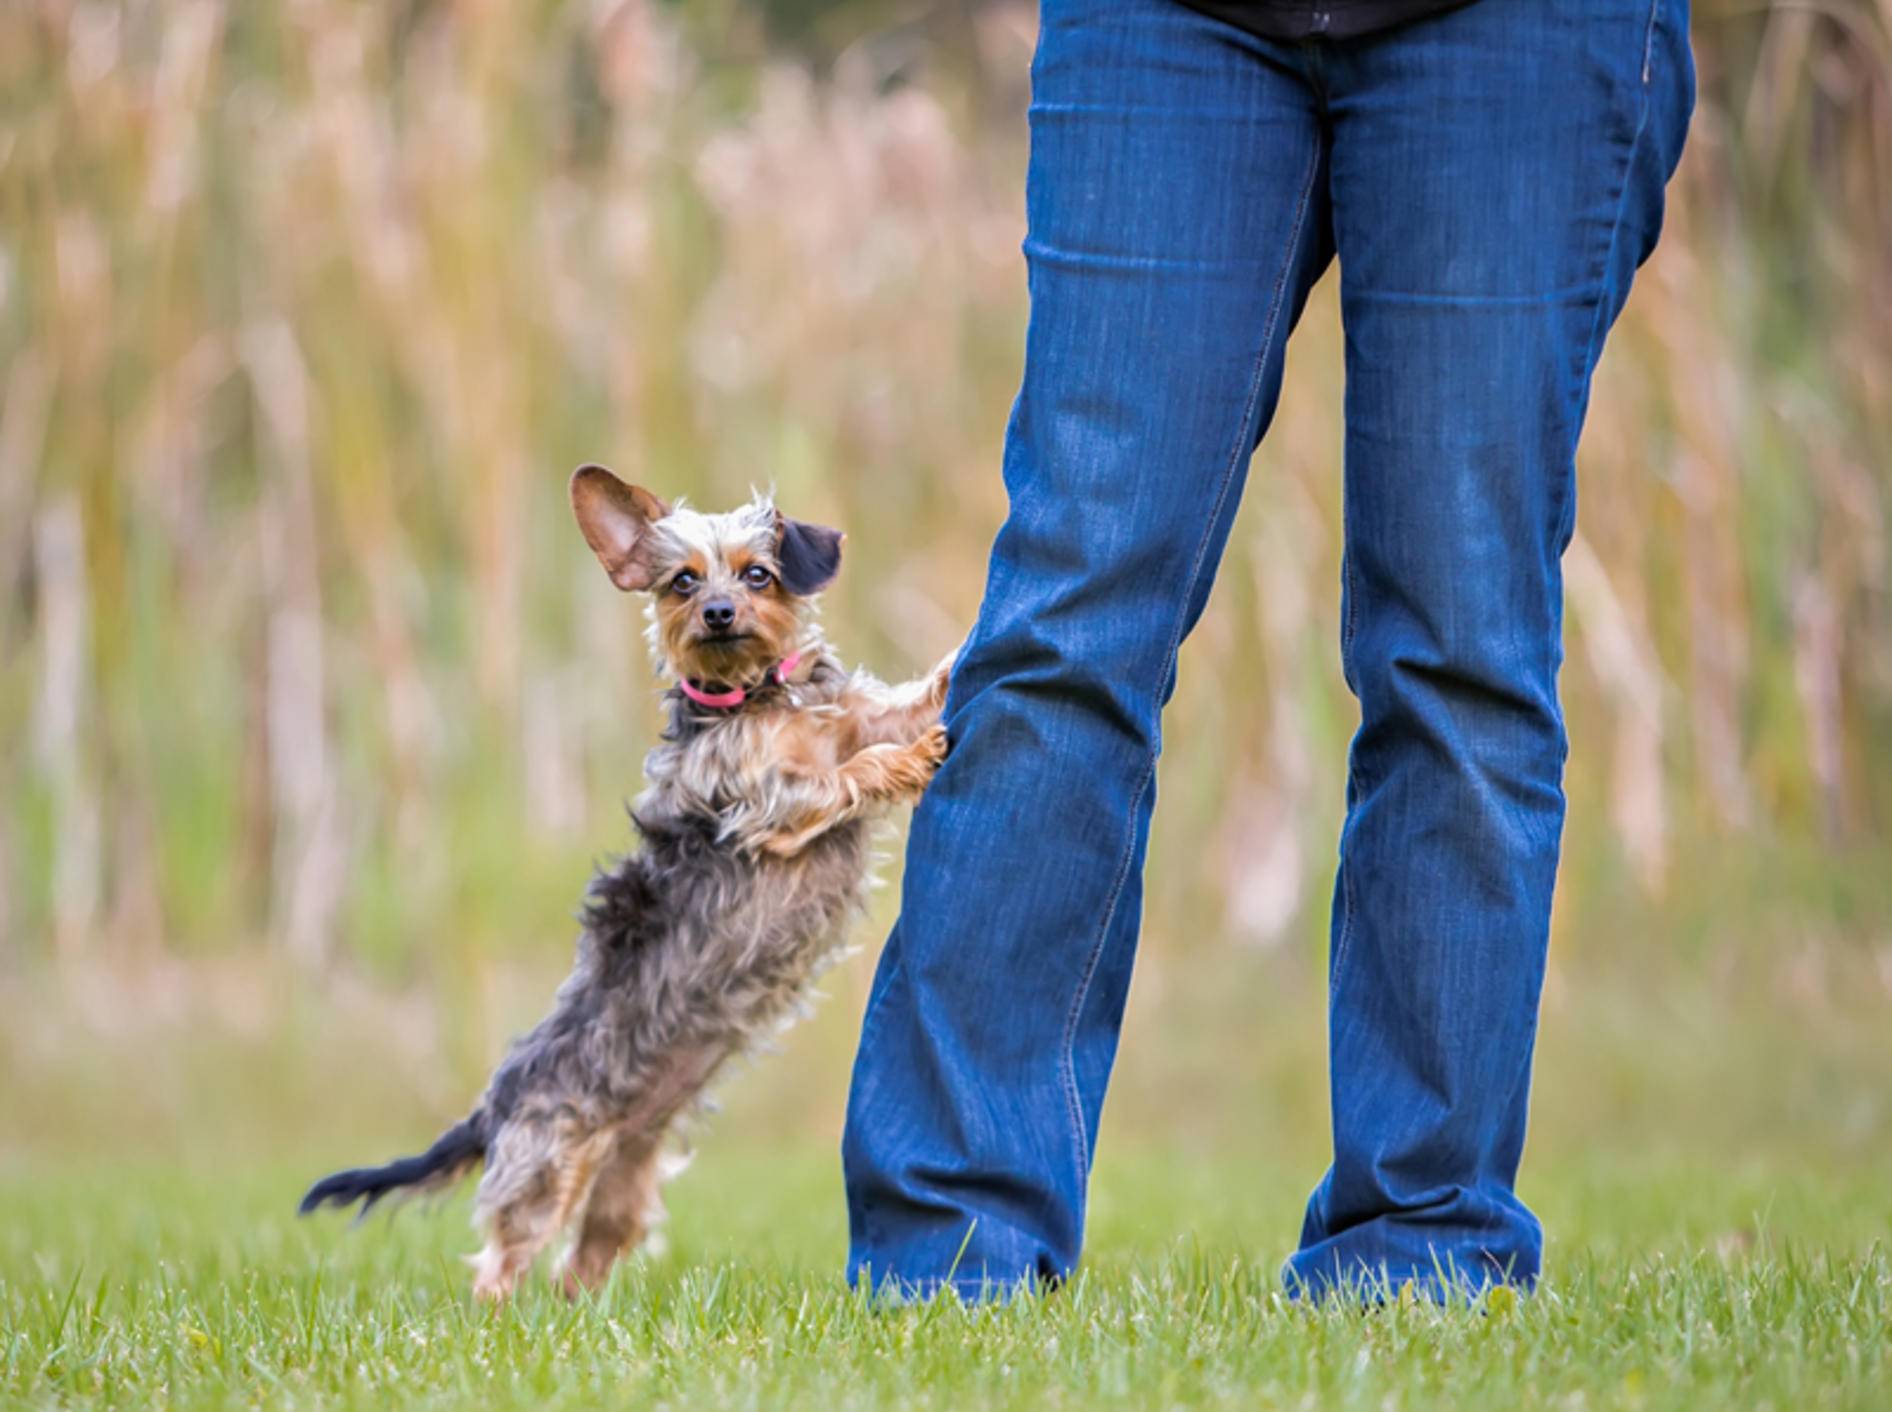 "Duuu, guck mal, hier unten, hier bin ich, beachte mich!": Frecher kleiner Hund will sofort Aufmerksamkeit – Shutterstock / Victoria Rak